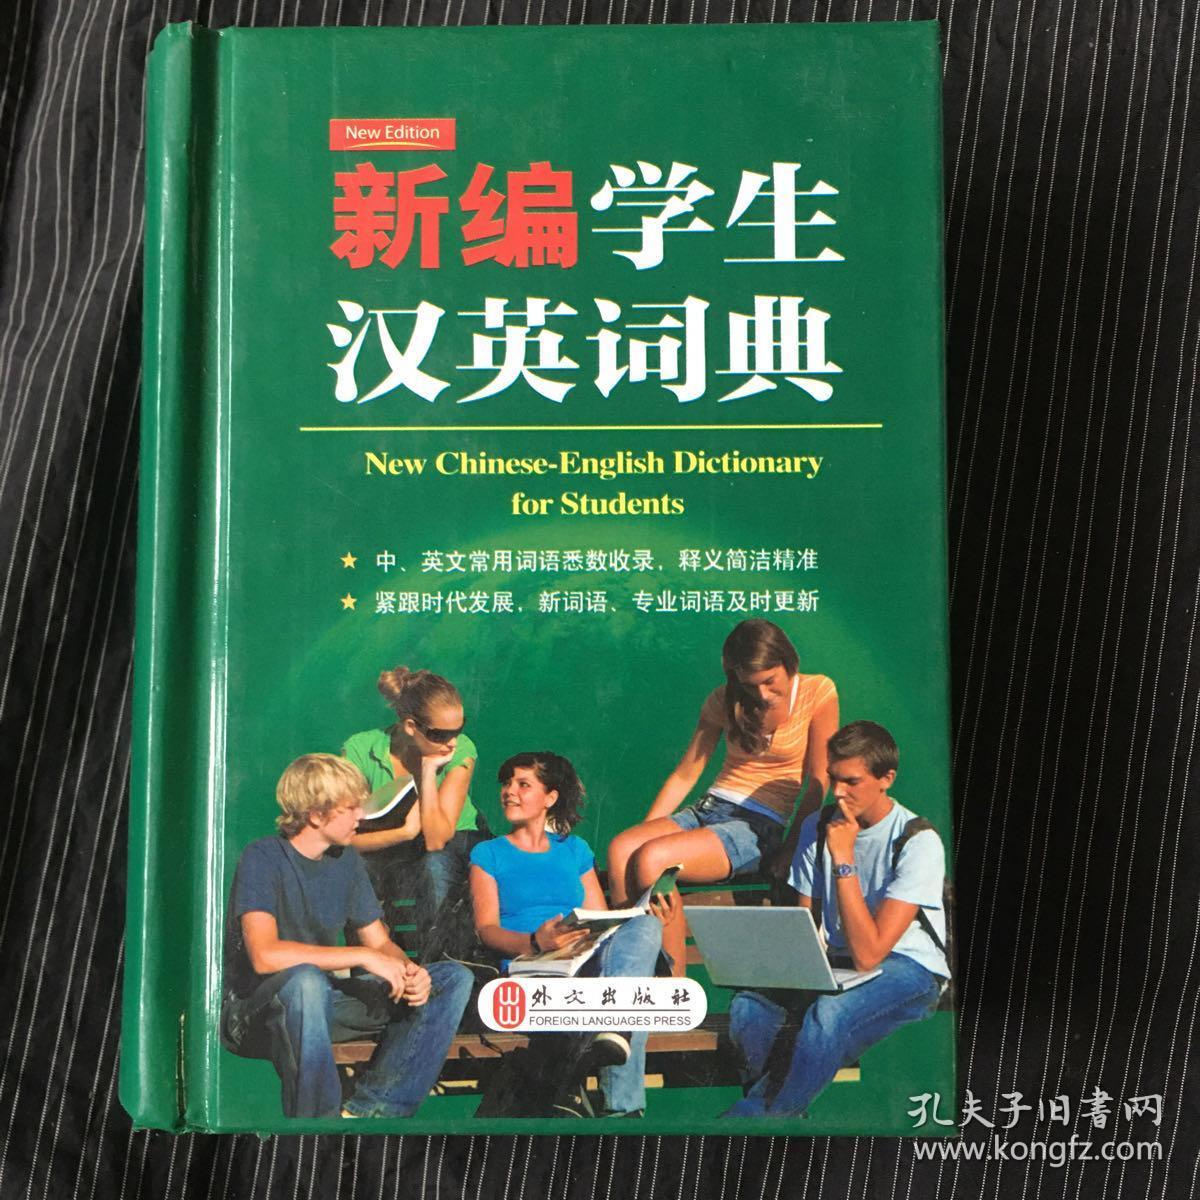 新编学生汉英词典--小开本便携装 《英语周报》特级教师主编